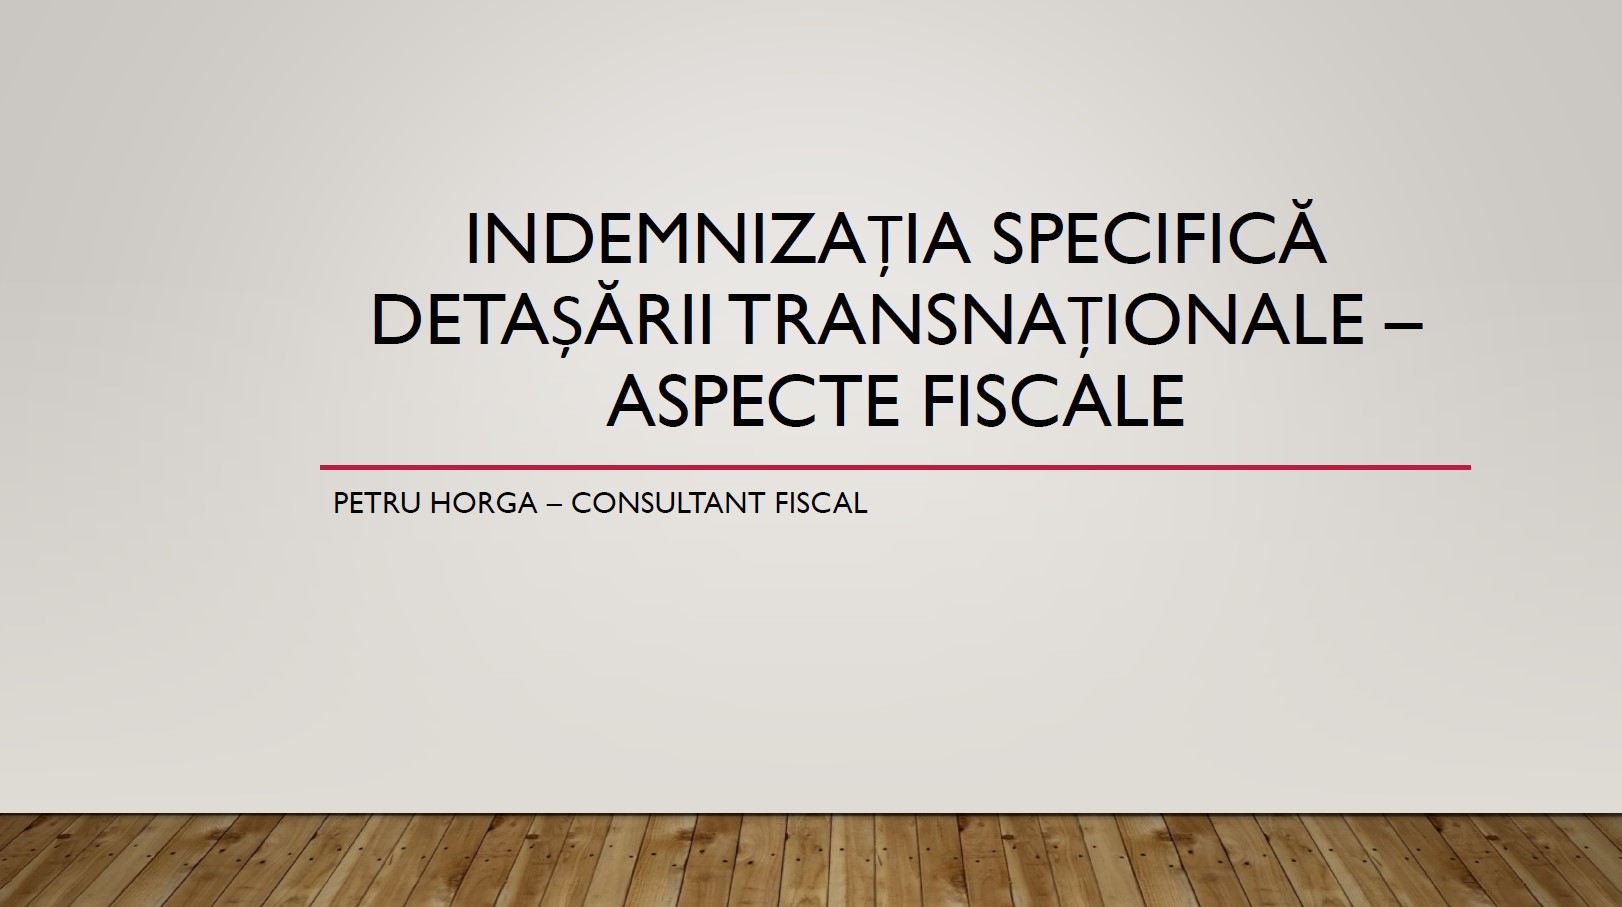 Petru Horga - Indemnizatia specifica detasarii transnationale